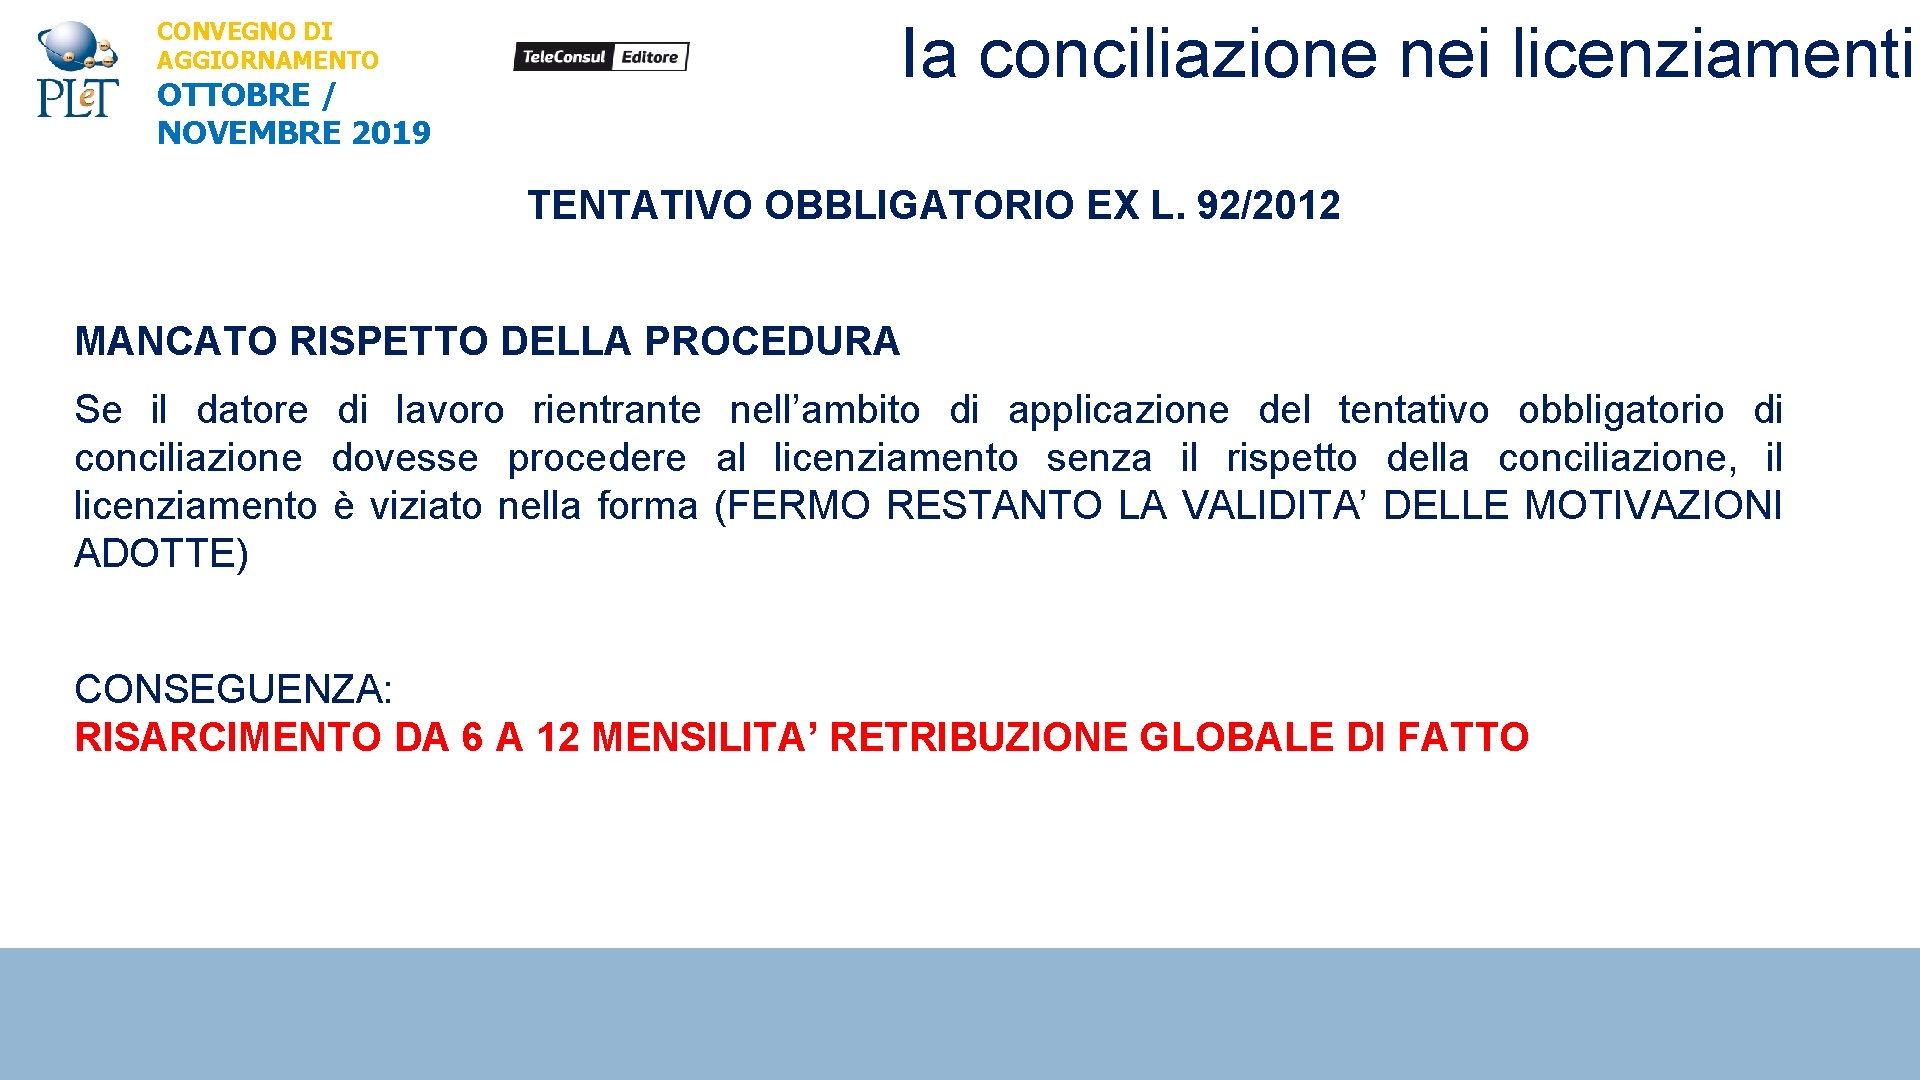 CONVEGNO DI AGGIORNAMENTO OTTOBRE / NOVEMBRE 2019 Ia conciliazione nei licenziamenti TENTATIVO OBBLIGATORIO EX